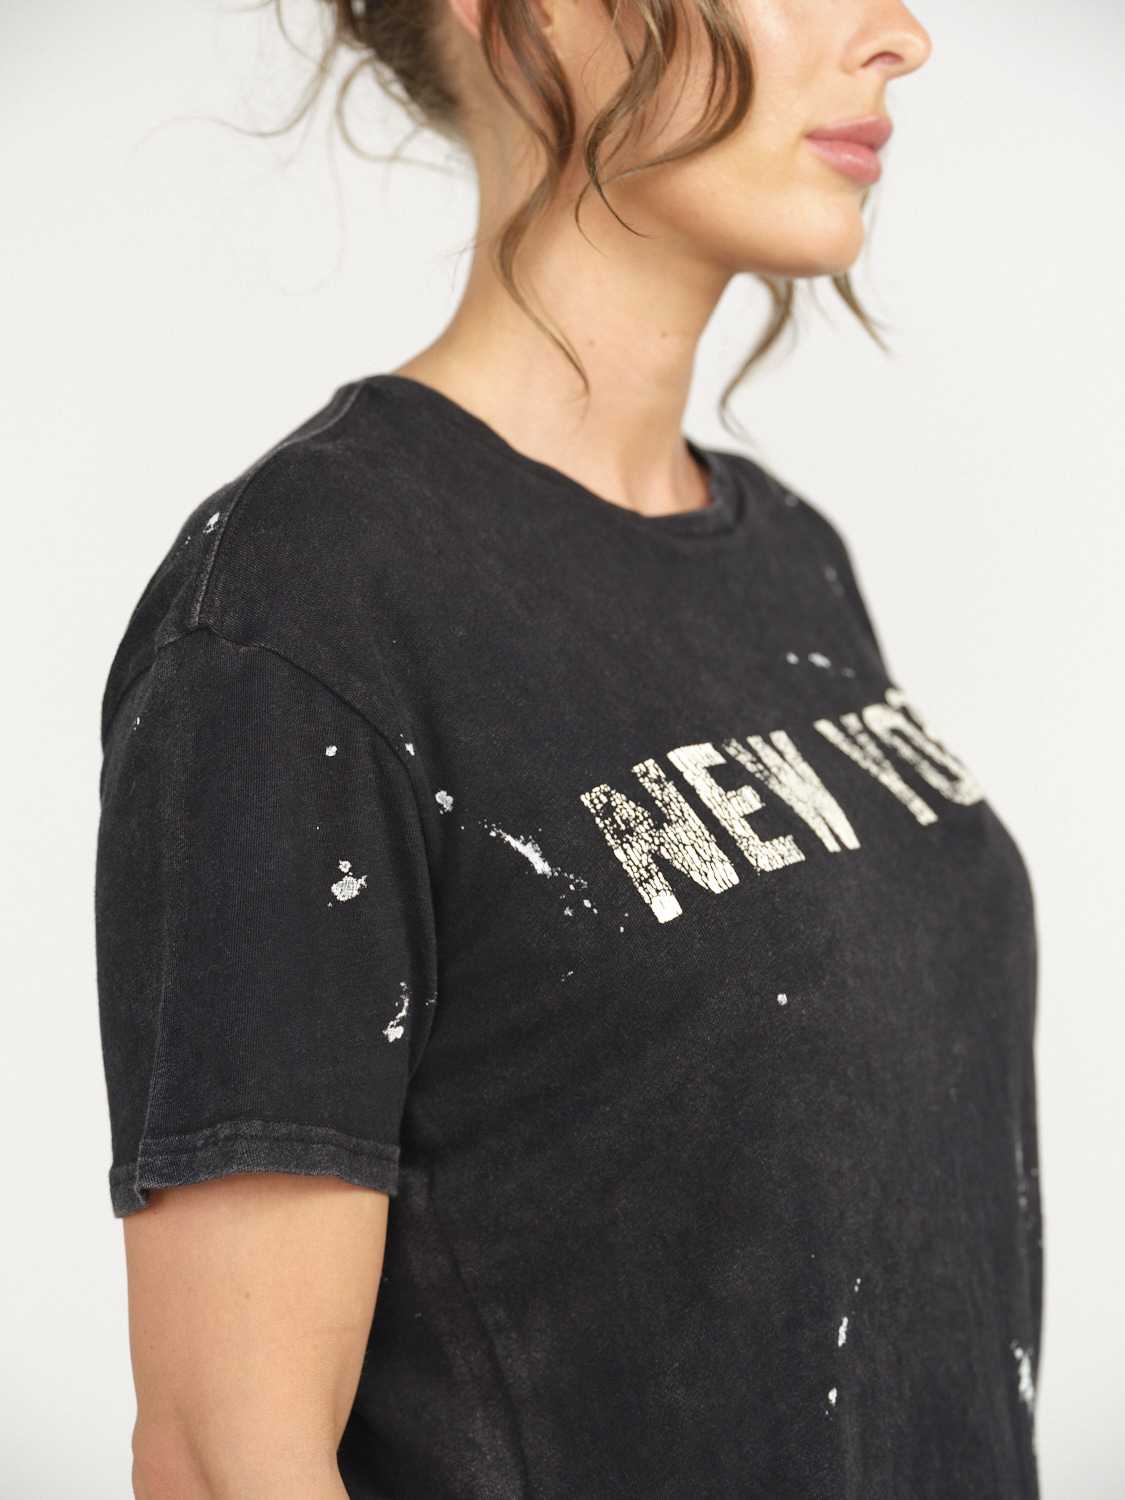 R13 New York Boy T-Shirt - Splatter shirt made of cotton  black M